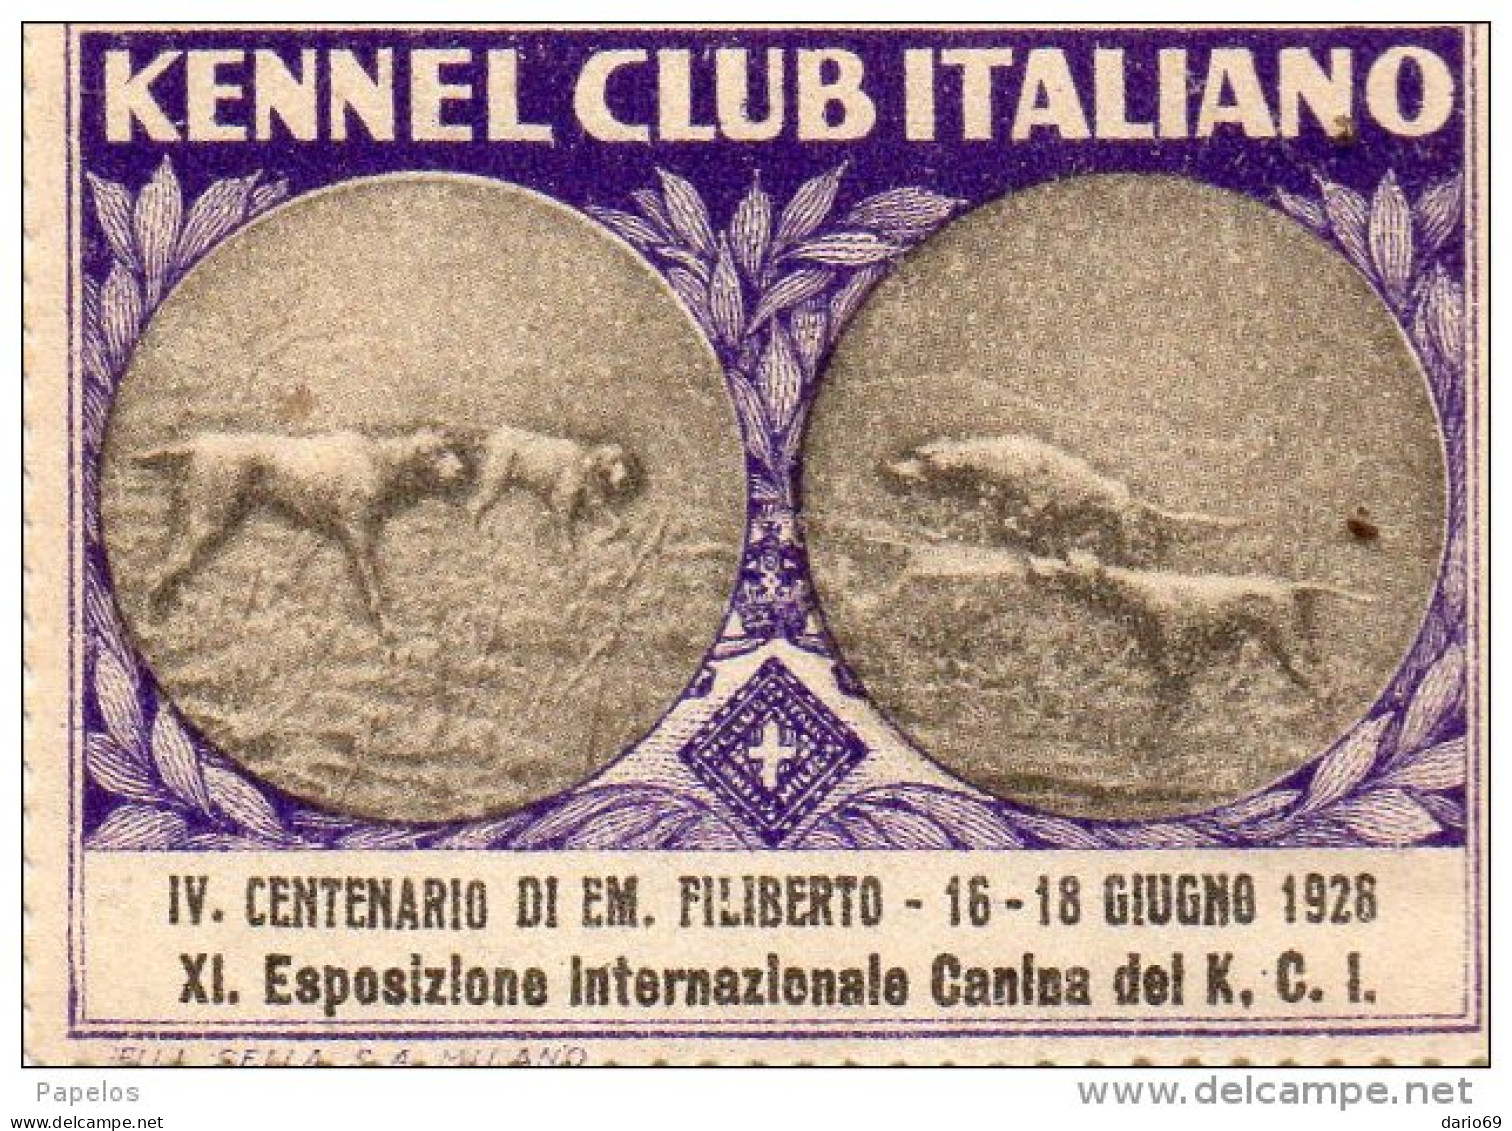 1928 KENNEL CLUB ITALIANO - Vignetten (Erinnophilie)